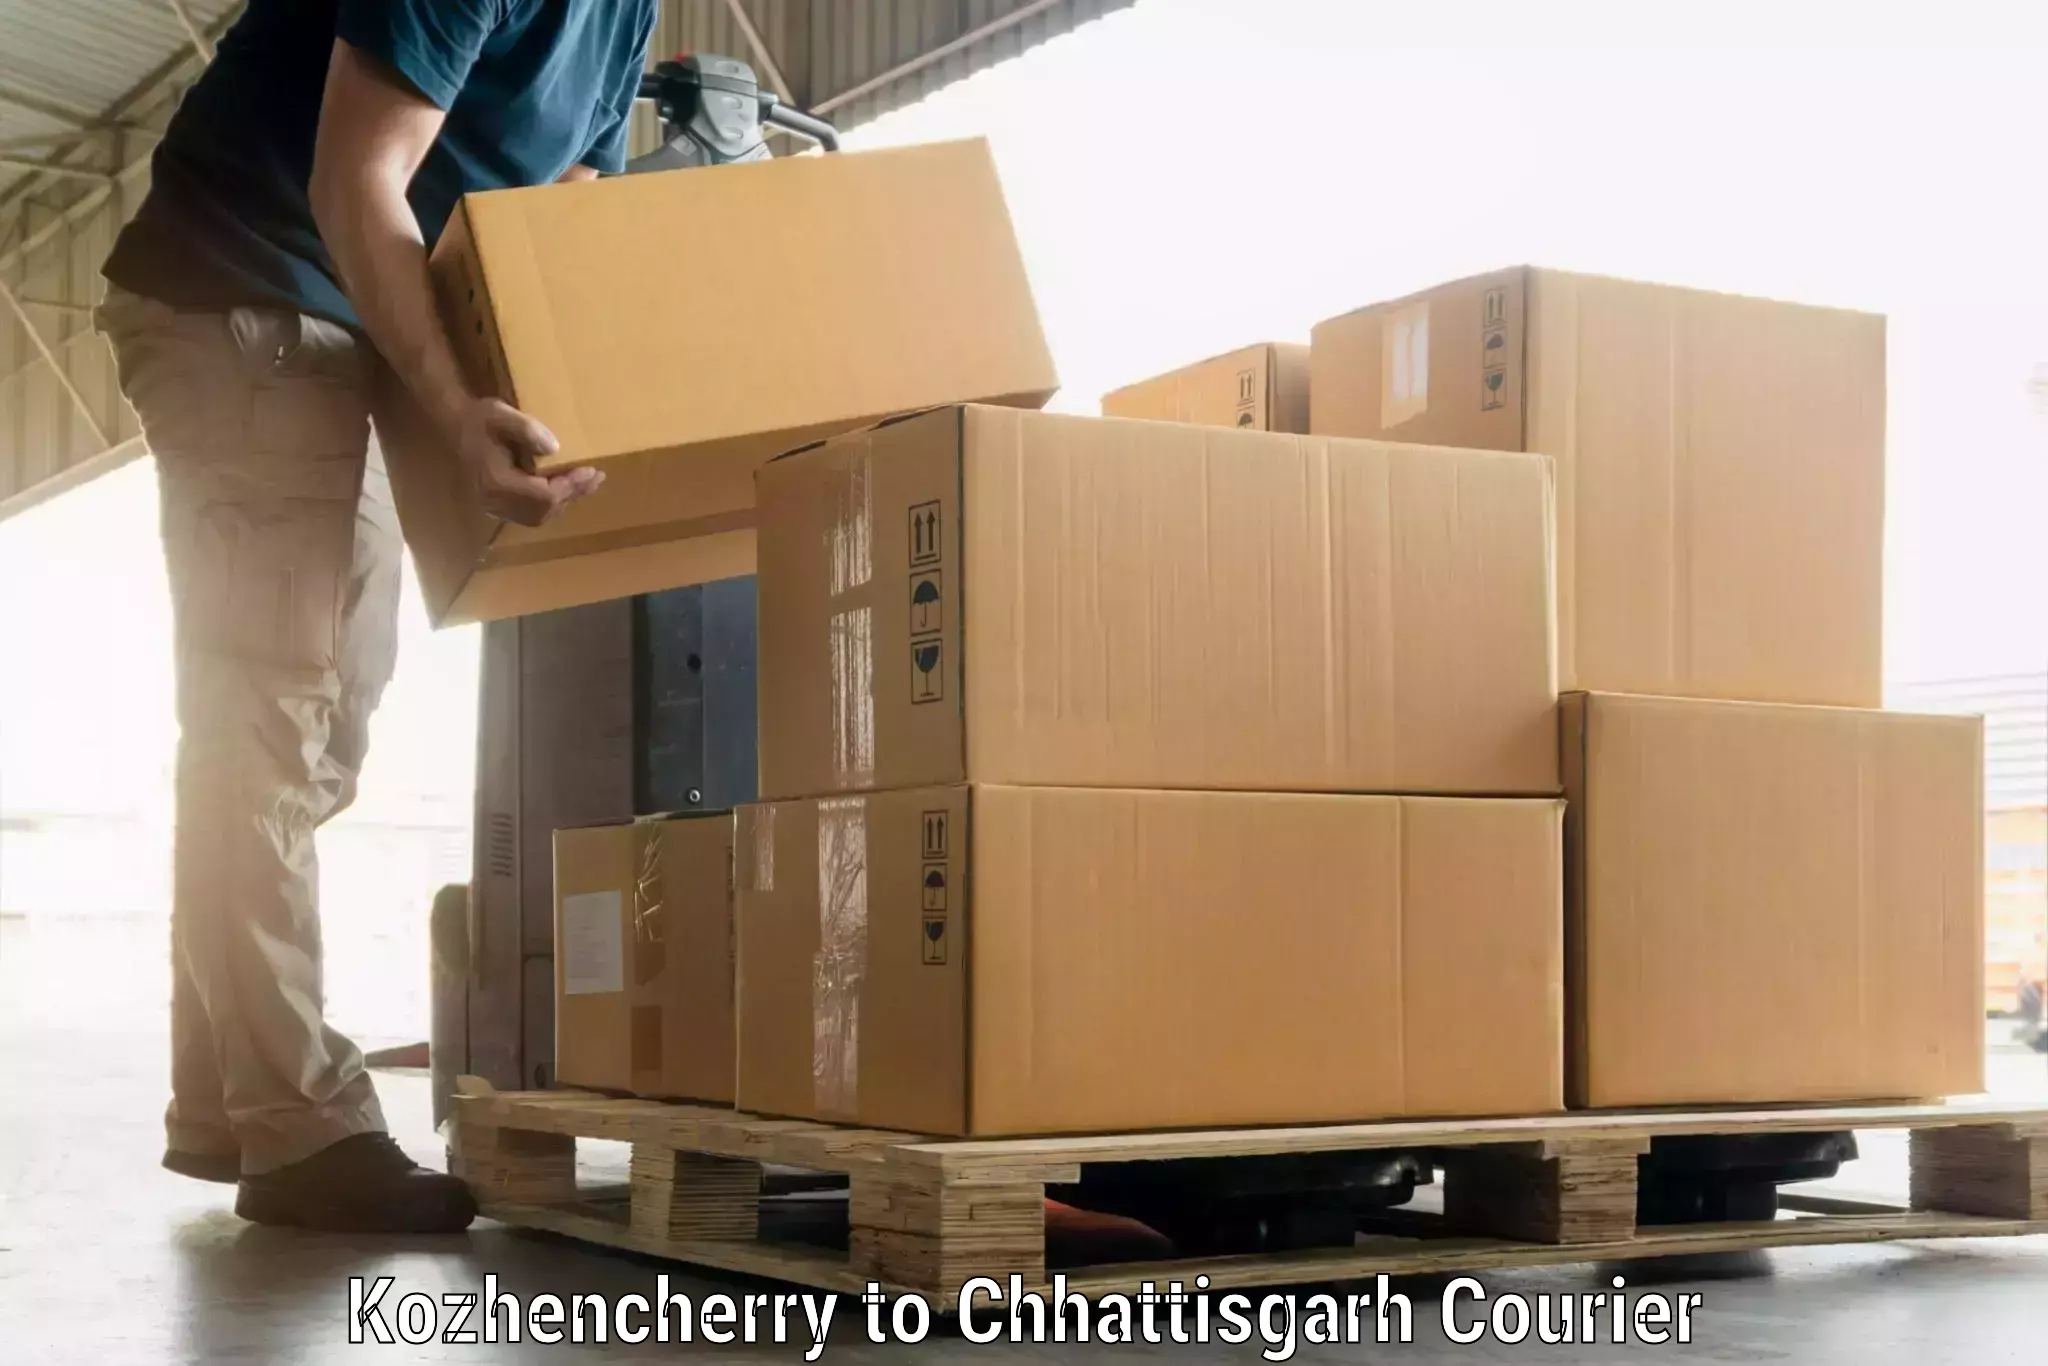 Luggage transport solutions Kozhencherry to Korea Chhattisgarh